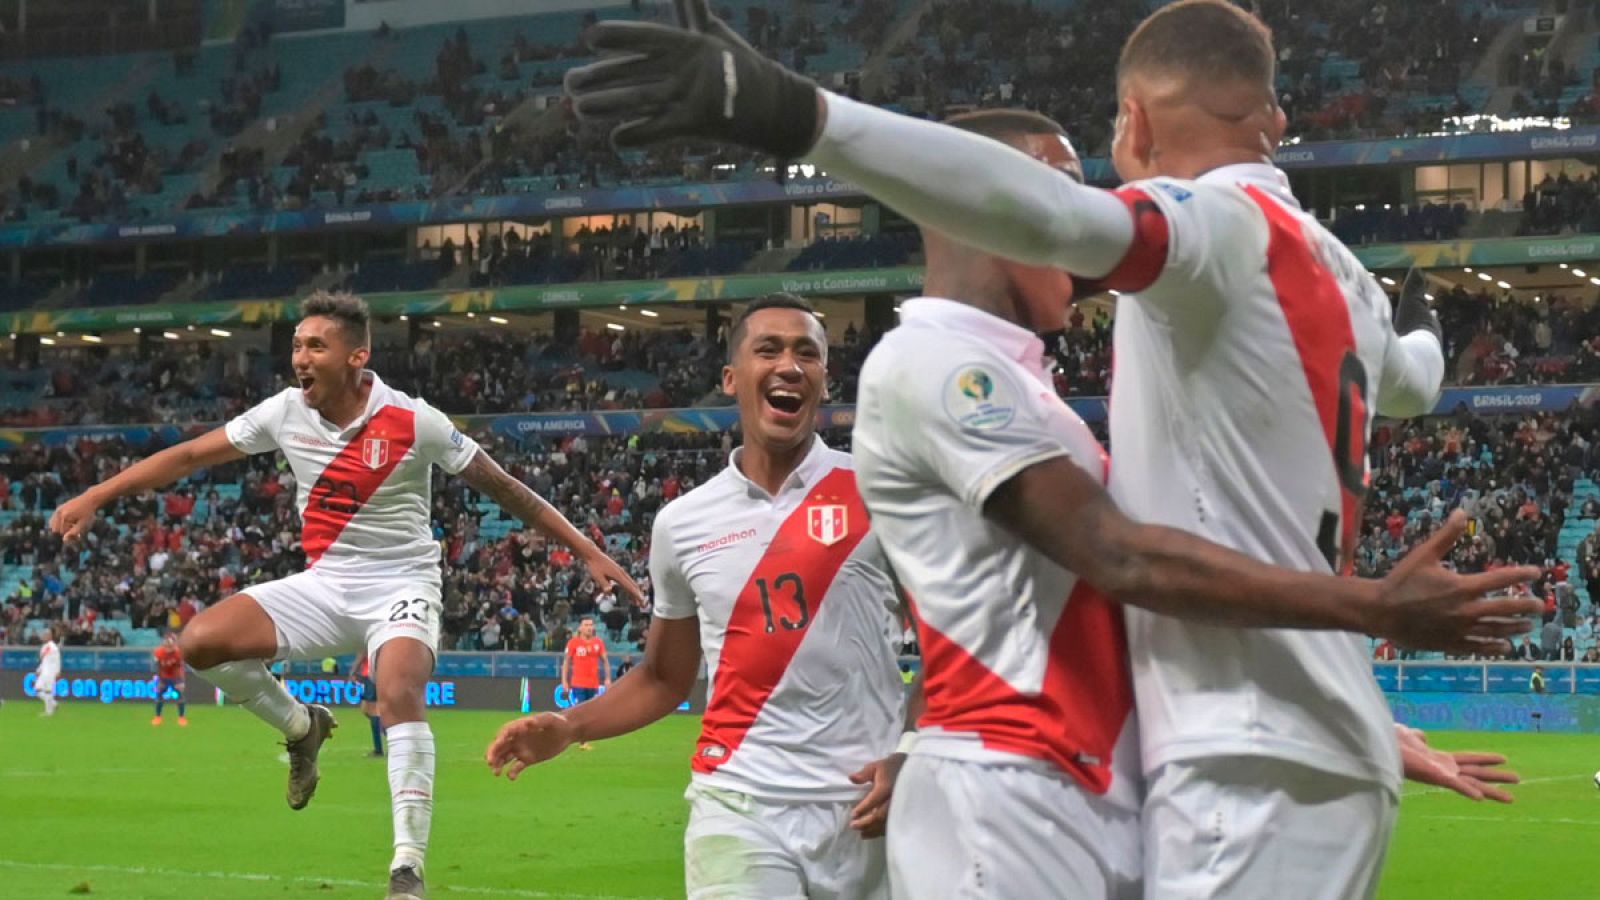 Varios jugadores de la selección peruana celebrando su triunfo tras finalizar el partido frente a Chile.